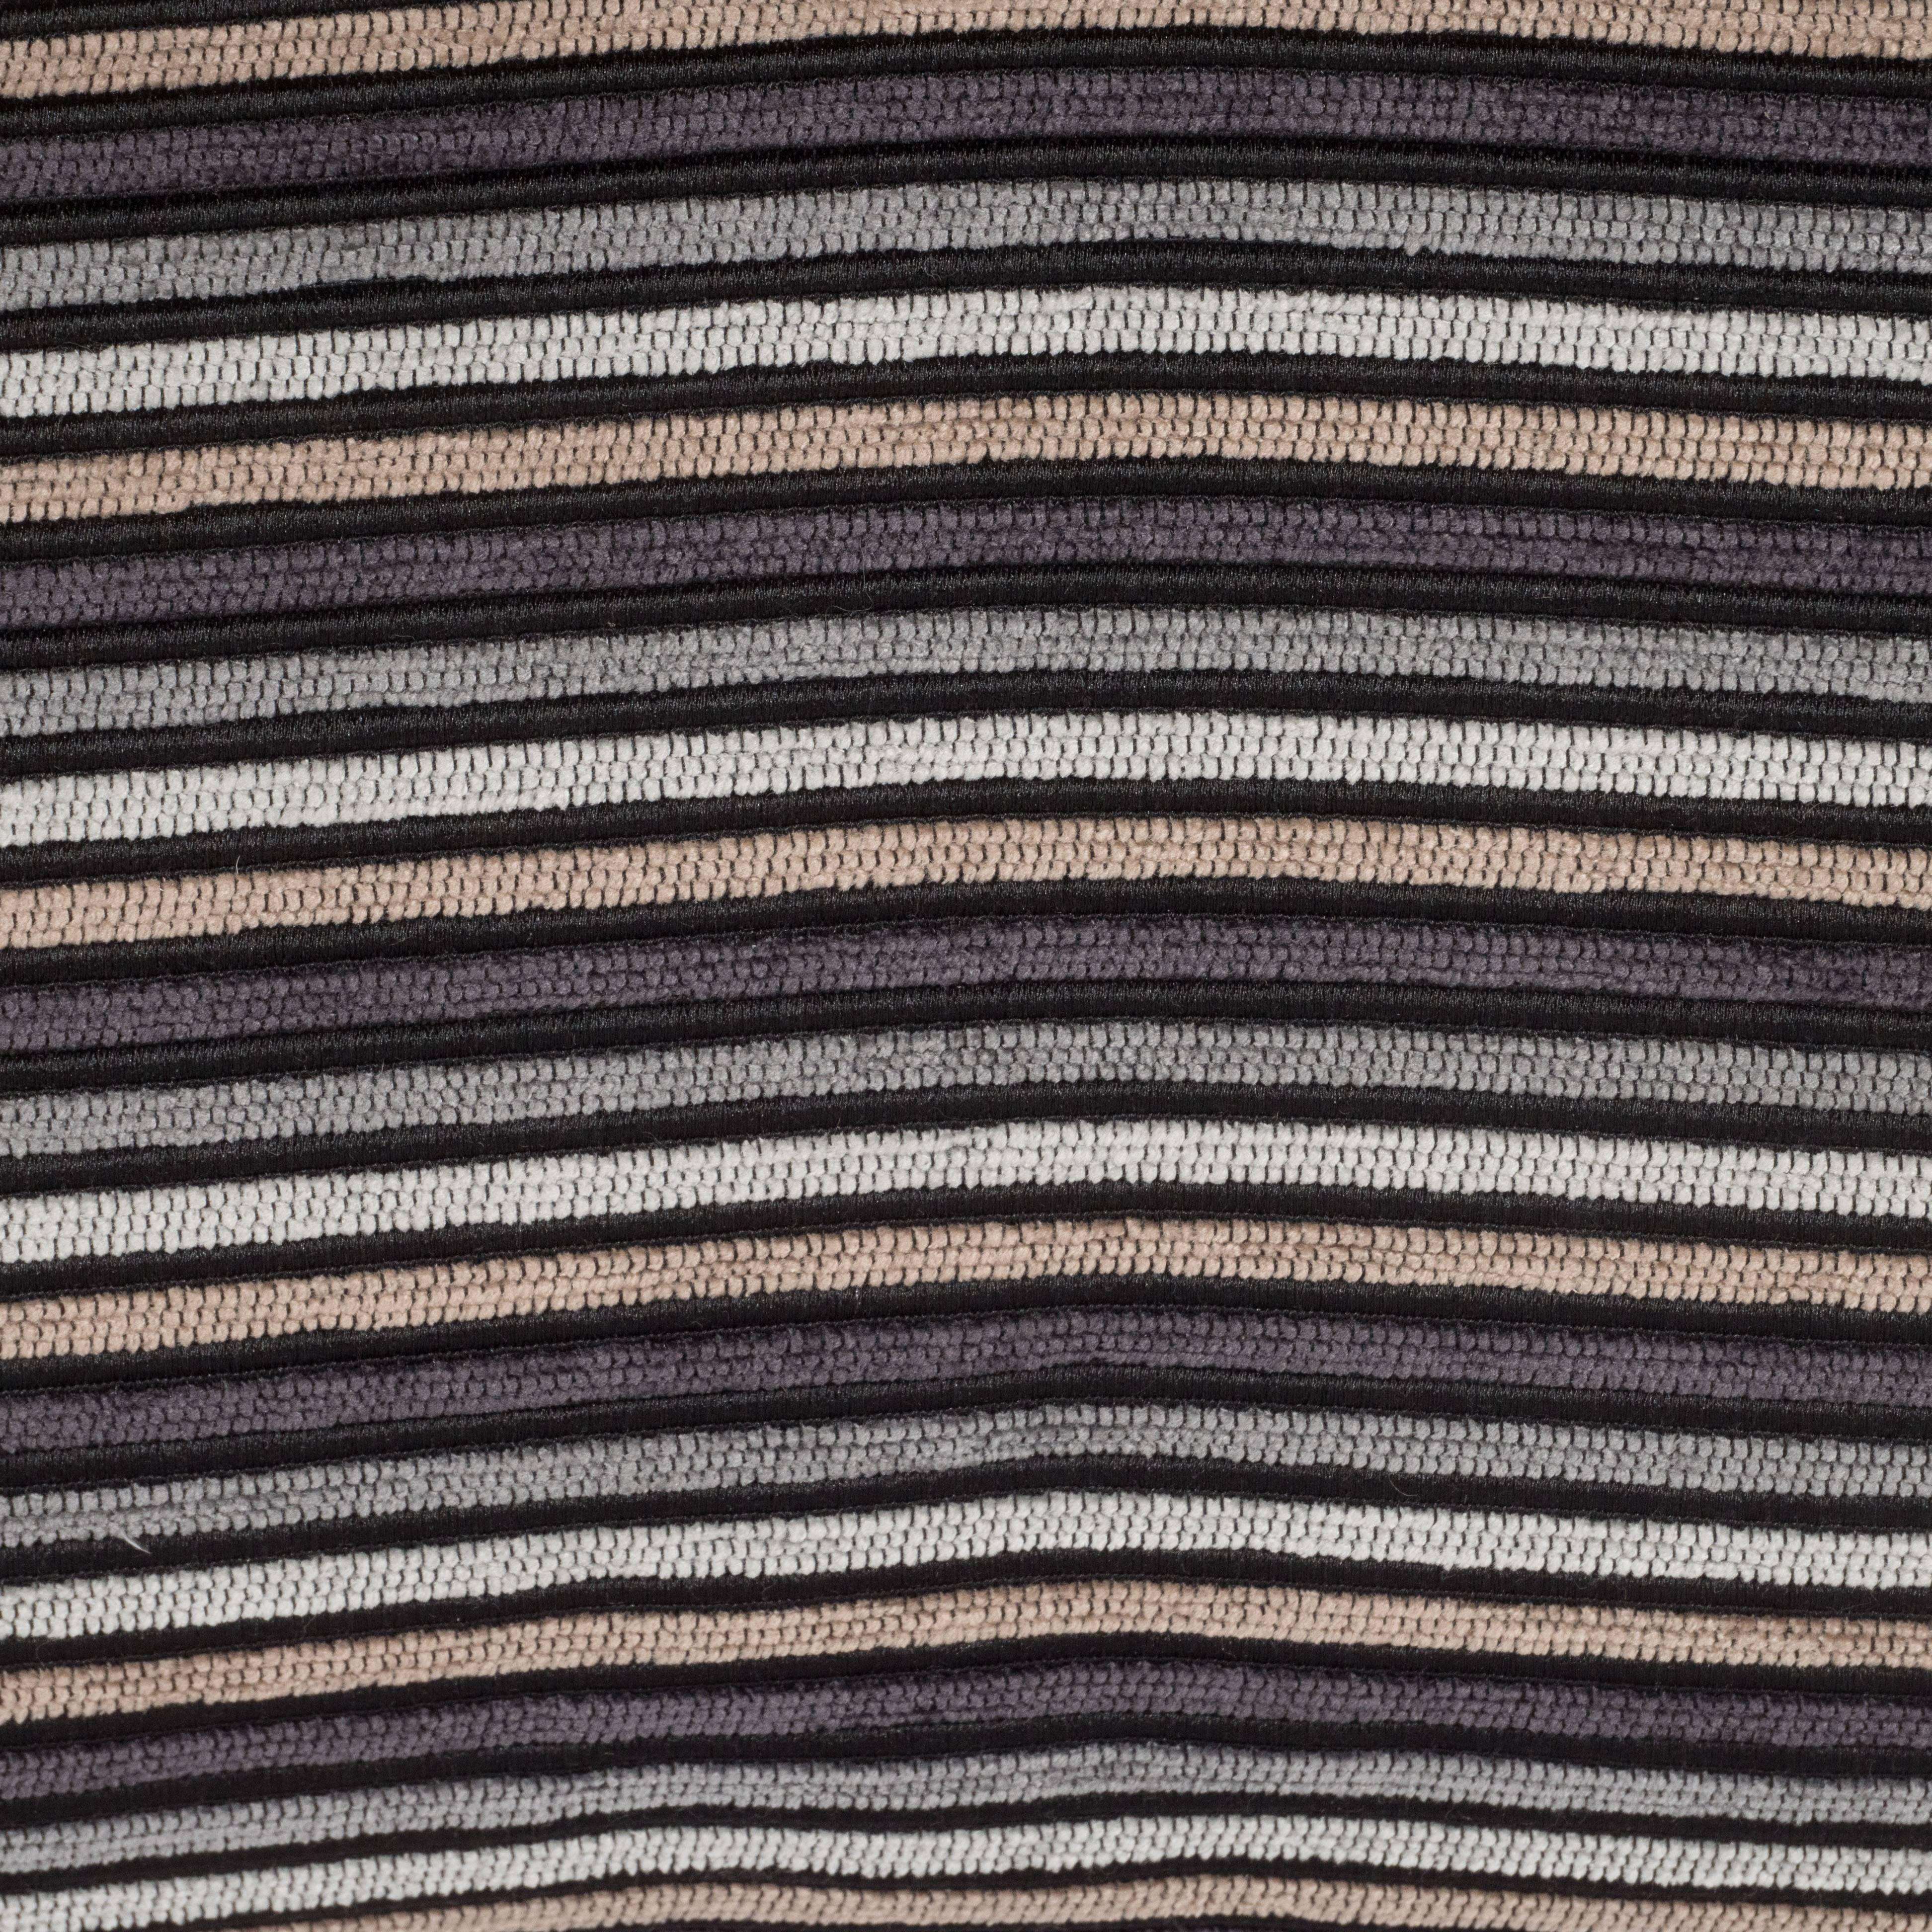 Pair of Modern Rectangular Striped Velvet Pillows in Neutral Silver & Gold Tones For Sale 1